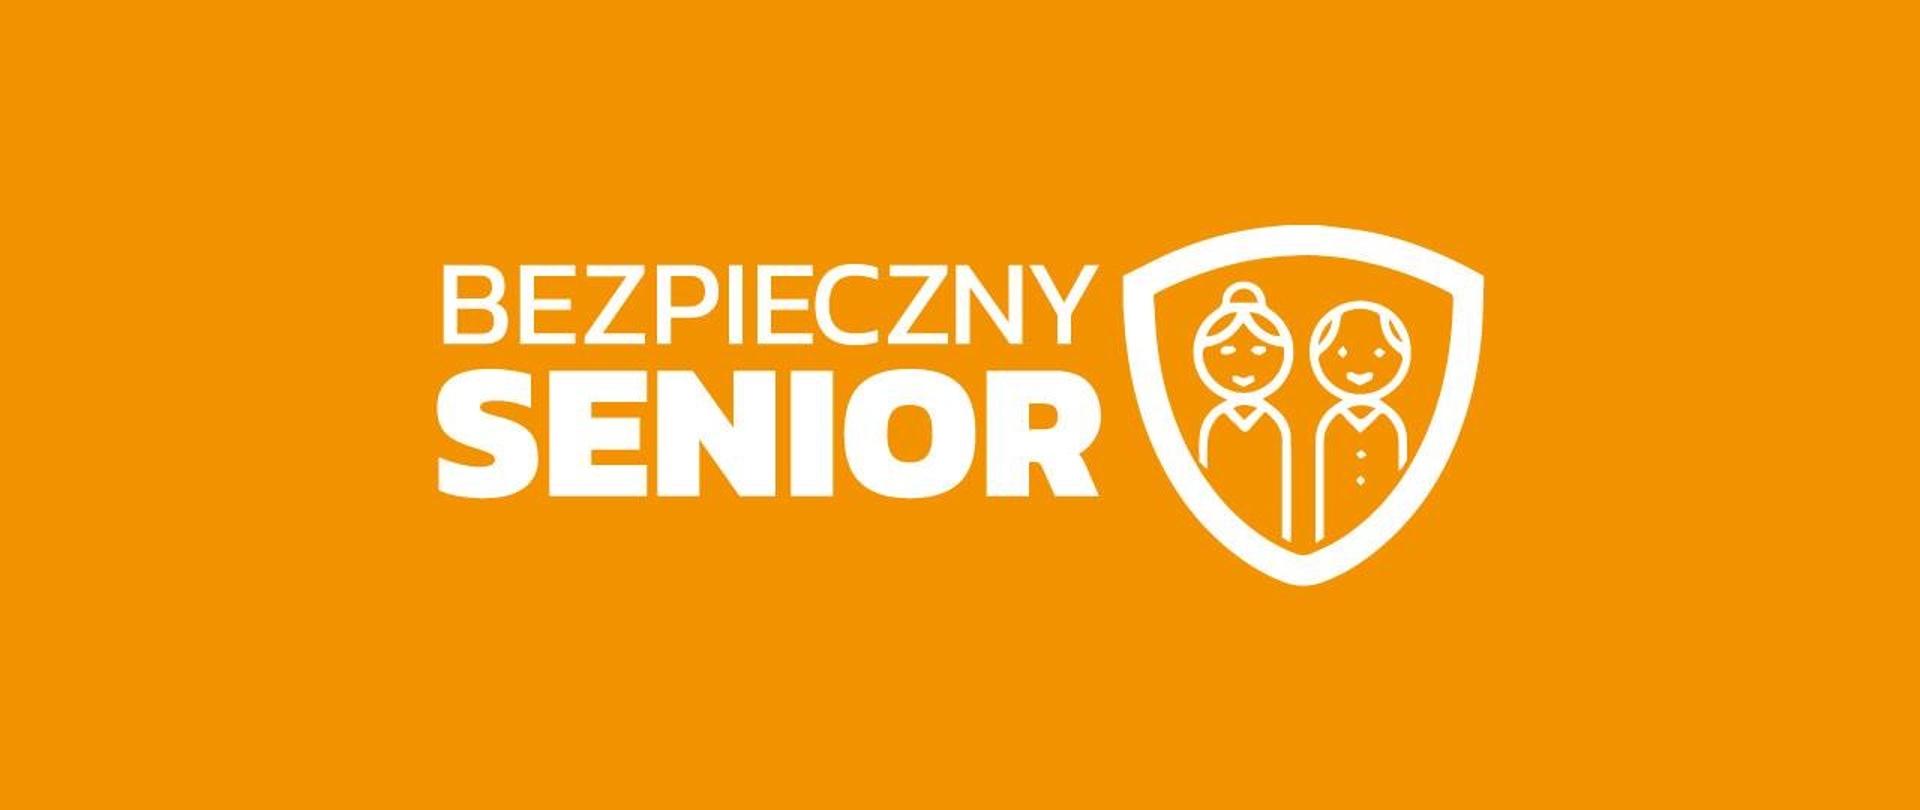 Logo kampanii Bezpieczny senior